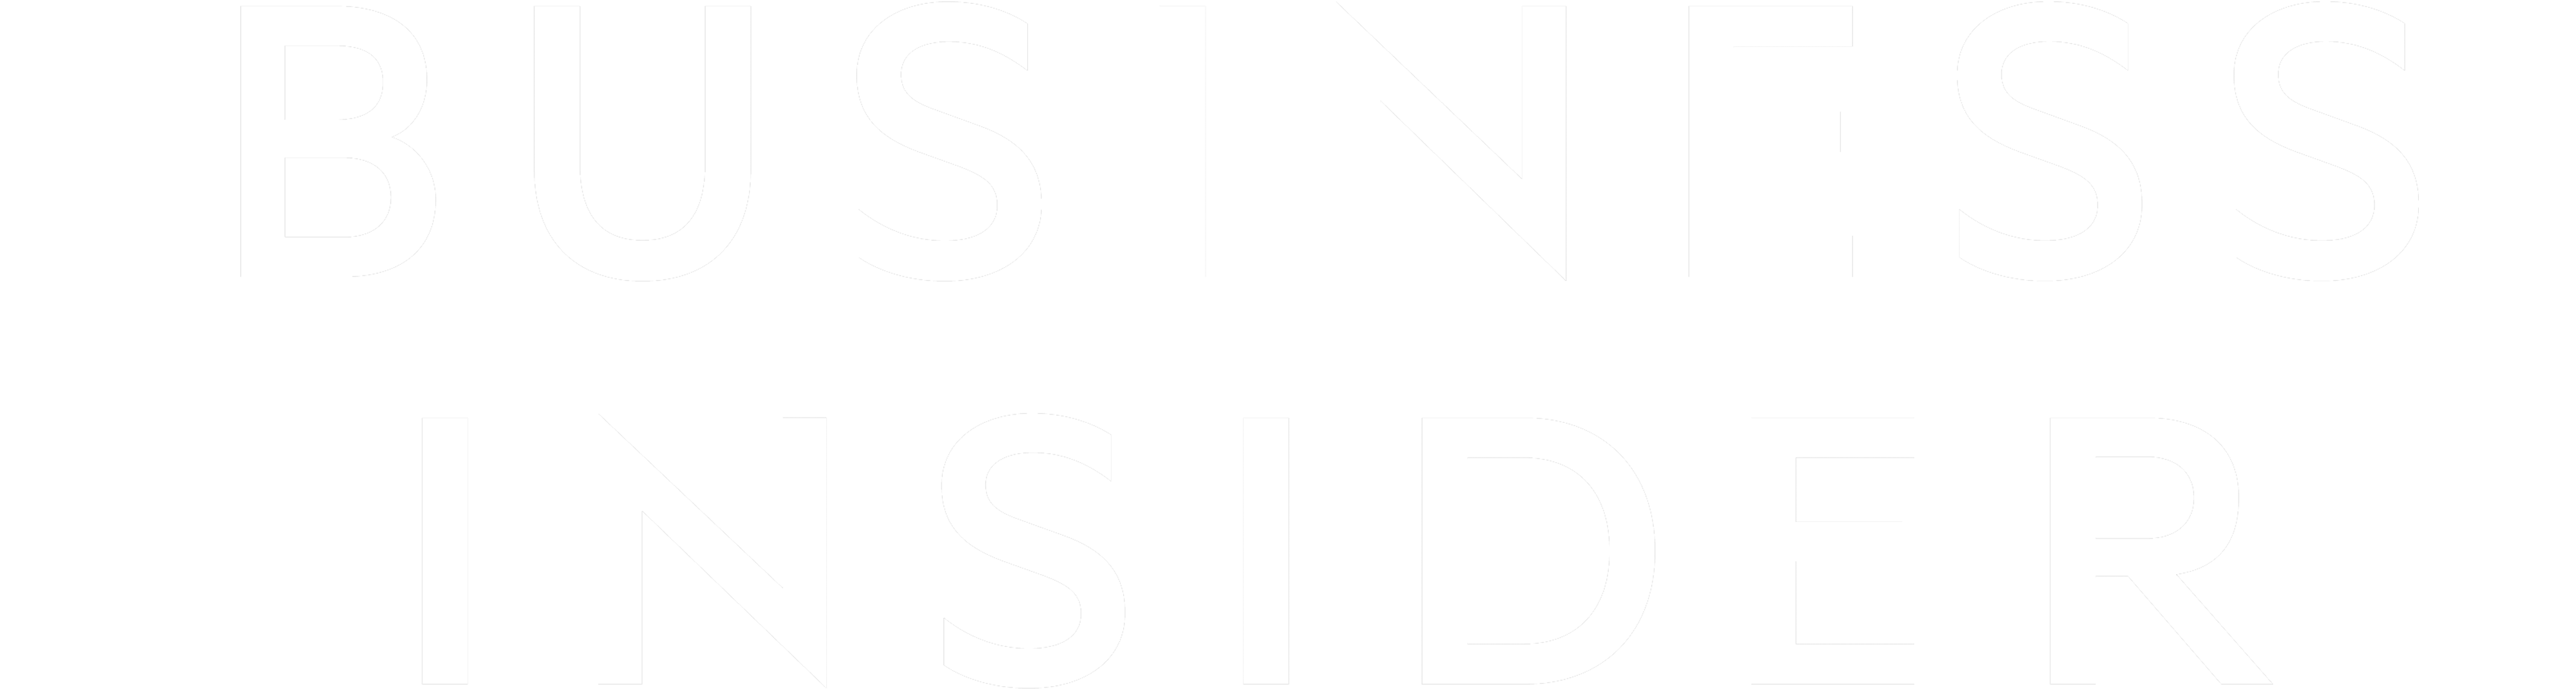 Business Insider logo white